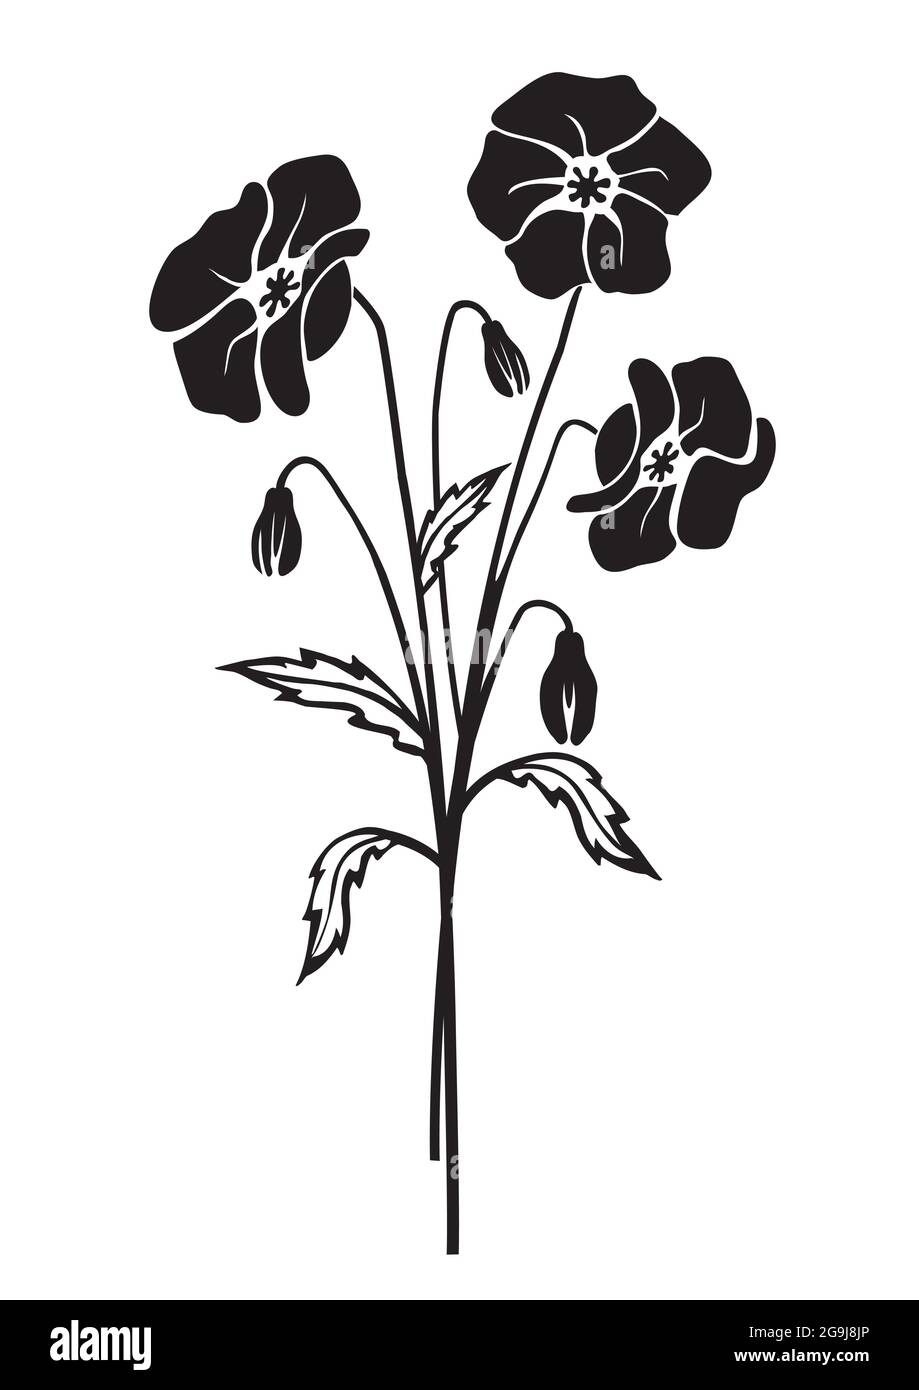 Fiori di papavero silhouette nera. Stilizzato Illustrazione del motivo del fiore malinconico. Isolato su sfondo bianco. Vettore disponibile. Illustrazione Vettoriale